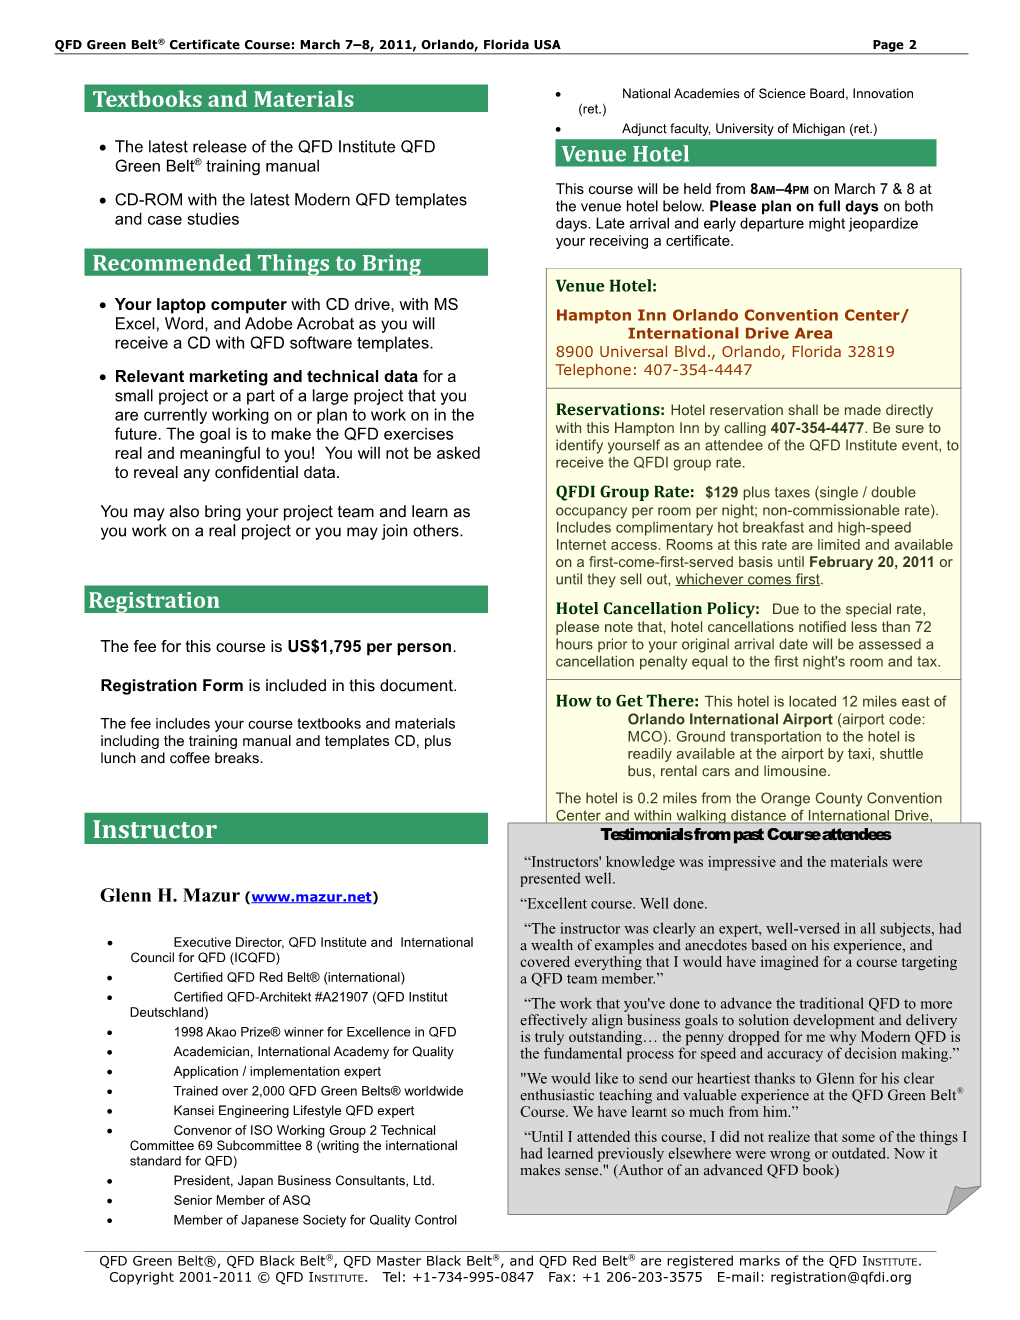 QFD Green Belt(R) Certificate Course Brochure